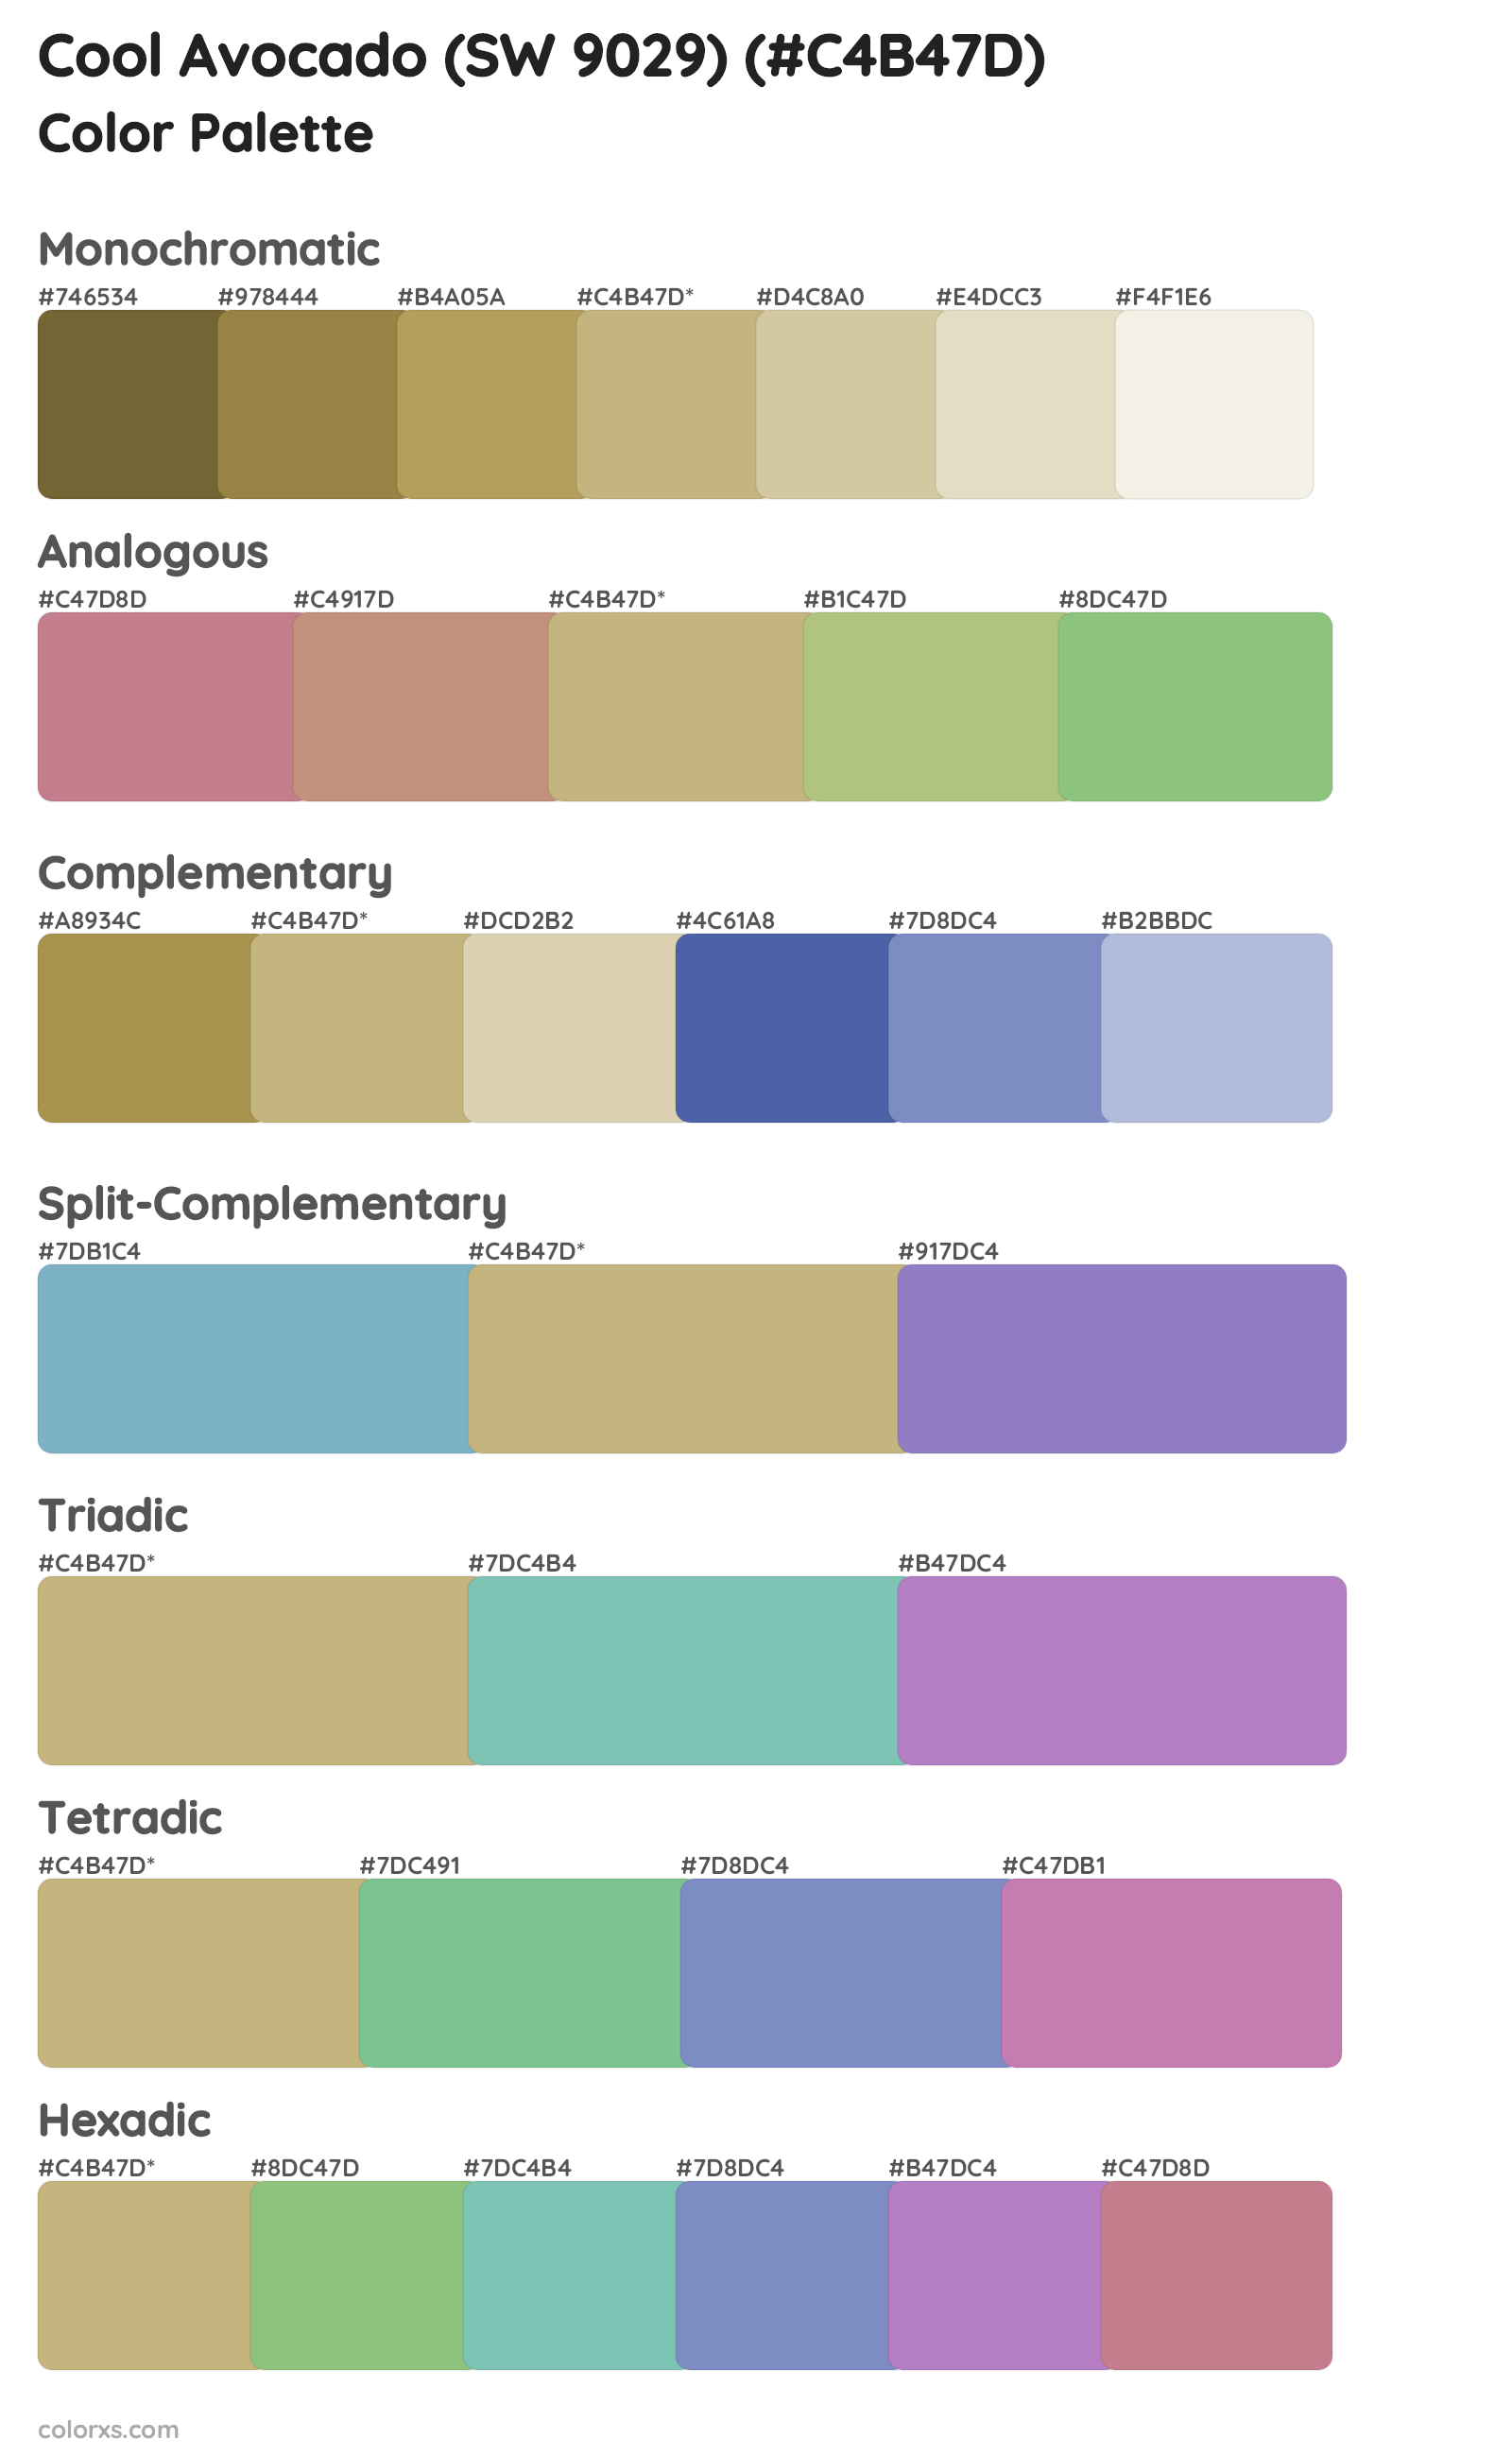 Cool Avocado (SW 9029) Color Scheme Palettes